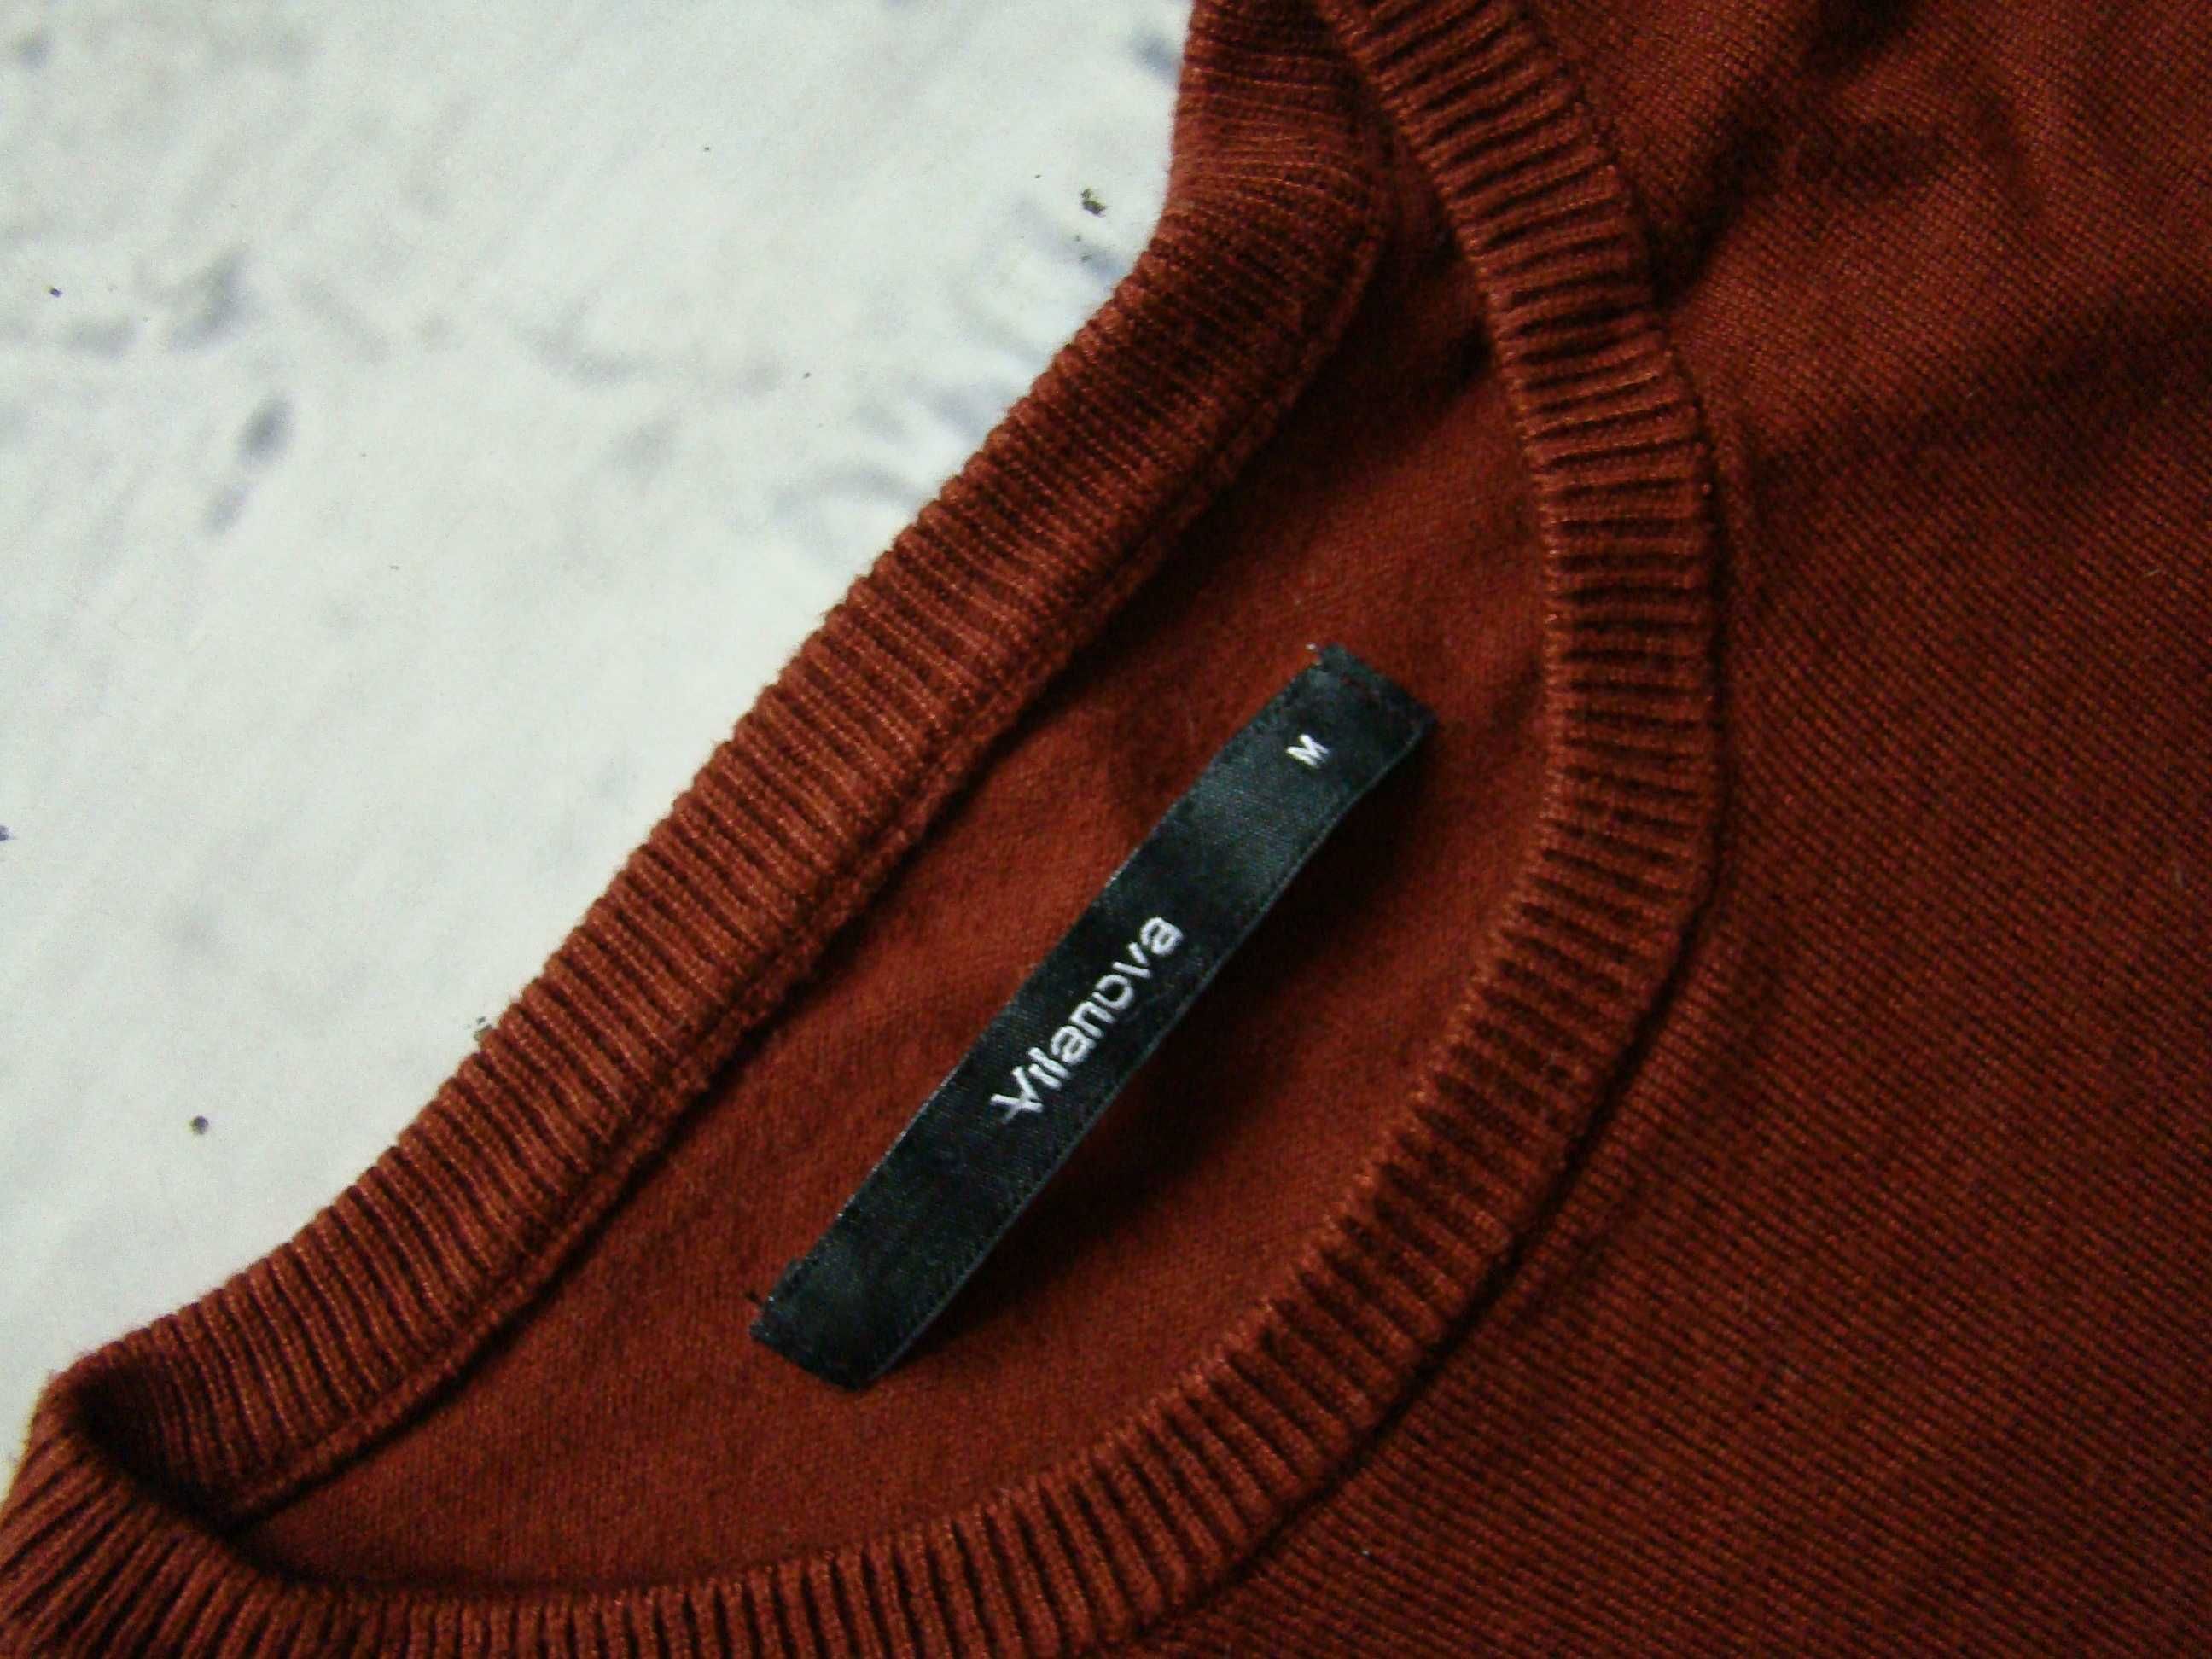 Vilanova świetny markowy sweter jak nowy rozmiar S/M